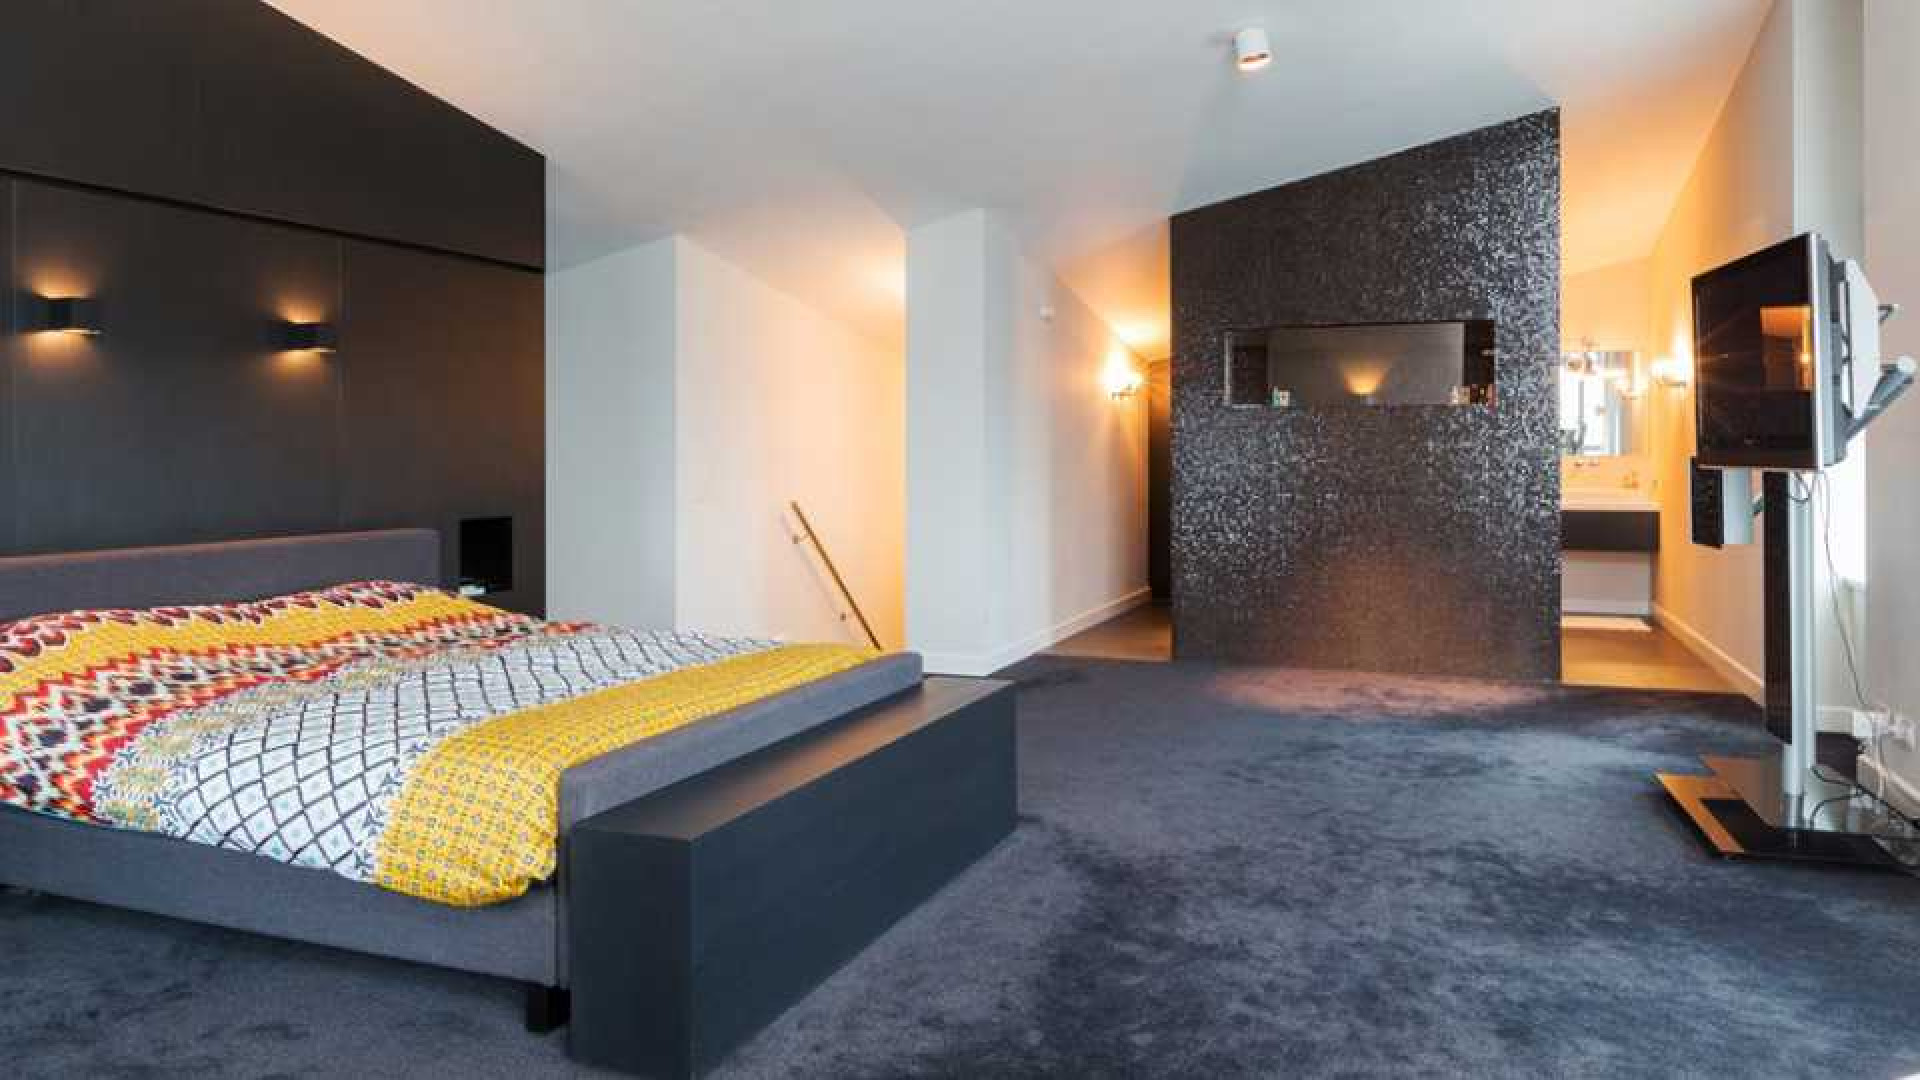 Amanda Krabbe en vriend Harrie Kolen kopen waanzinnig luxe penthouse in Eindhoven. Zie foto's